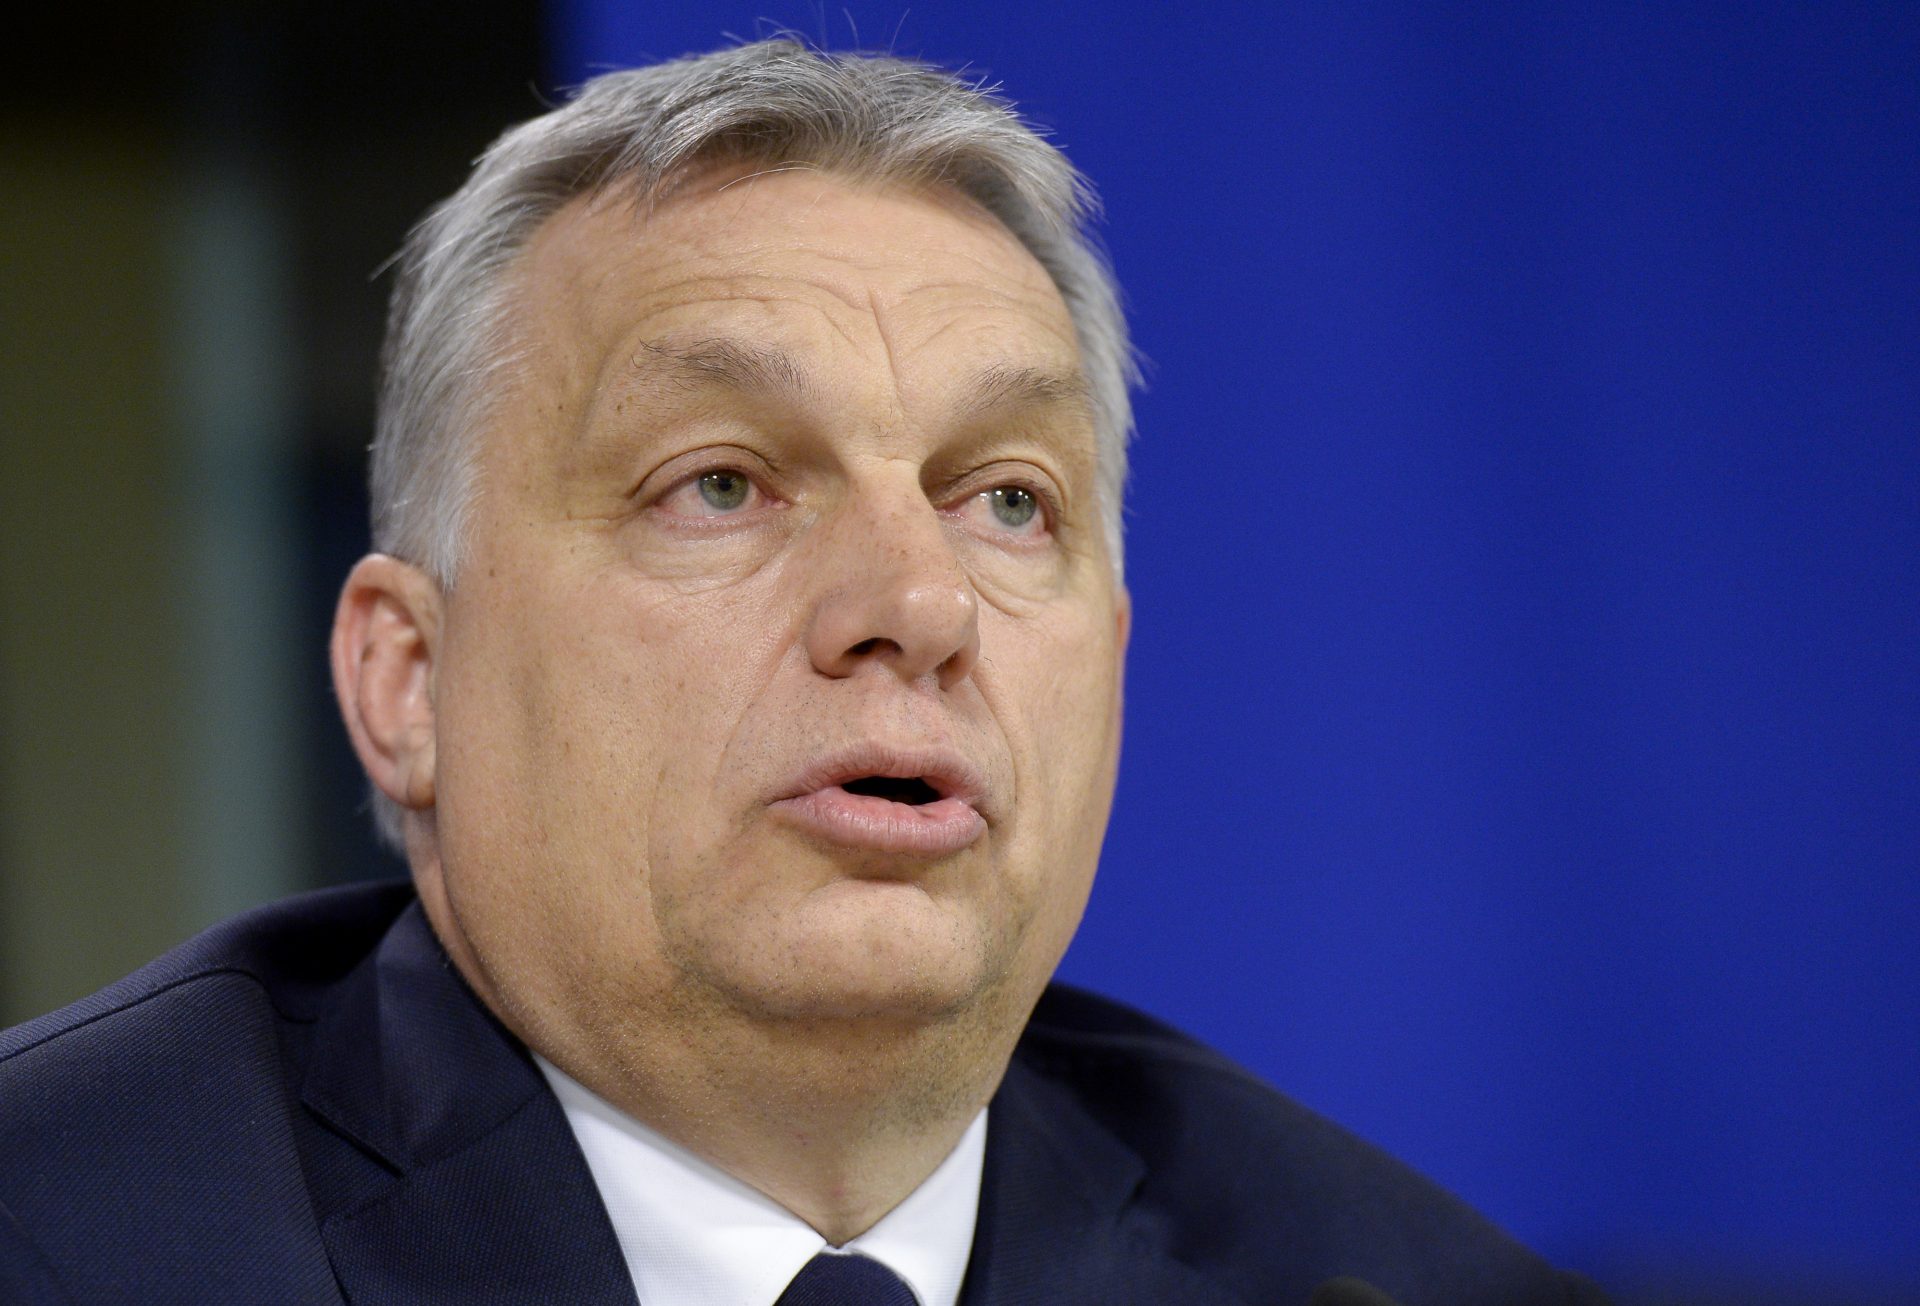 Orbán veut un cessez-le-feu immédiat en Ukraine.  On dit que les Hongrois ne sont en guerre avec personne et n’en veulent pas